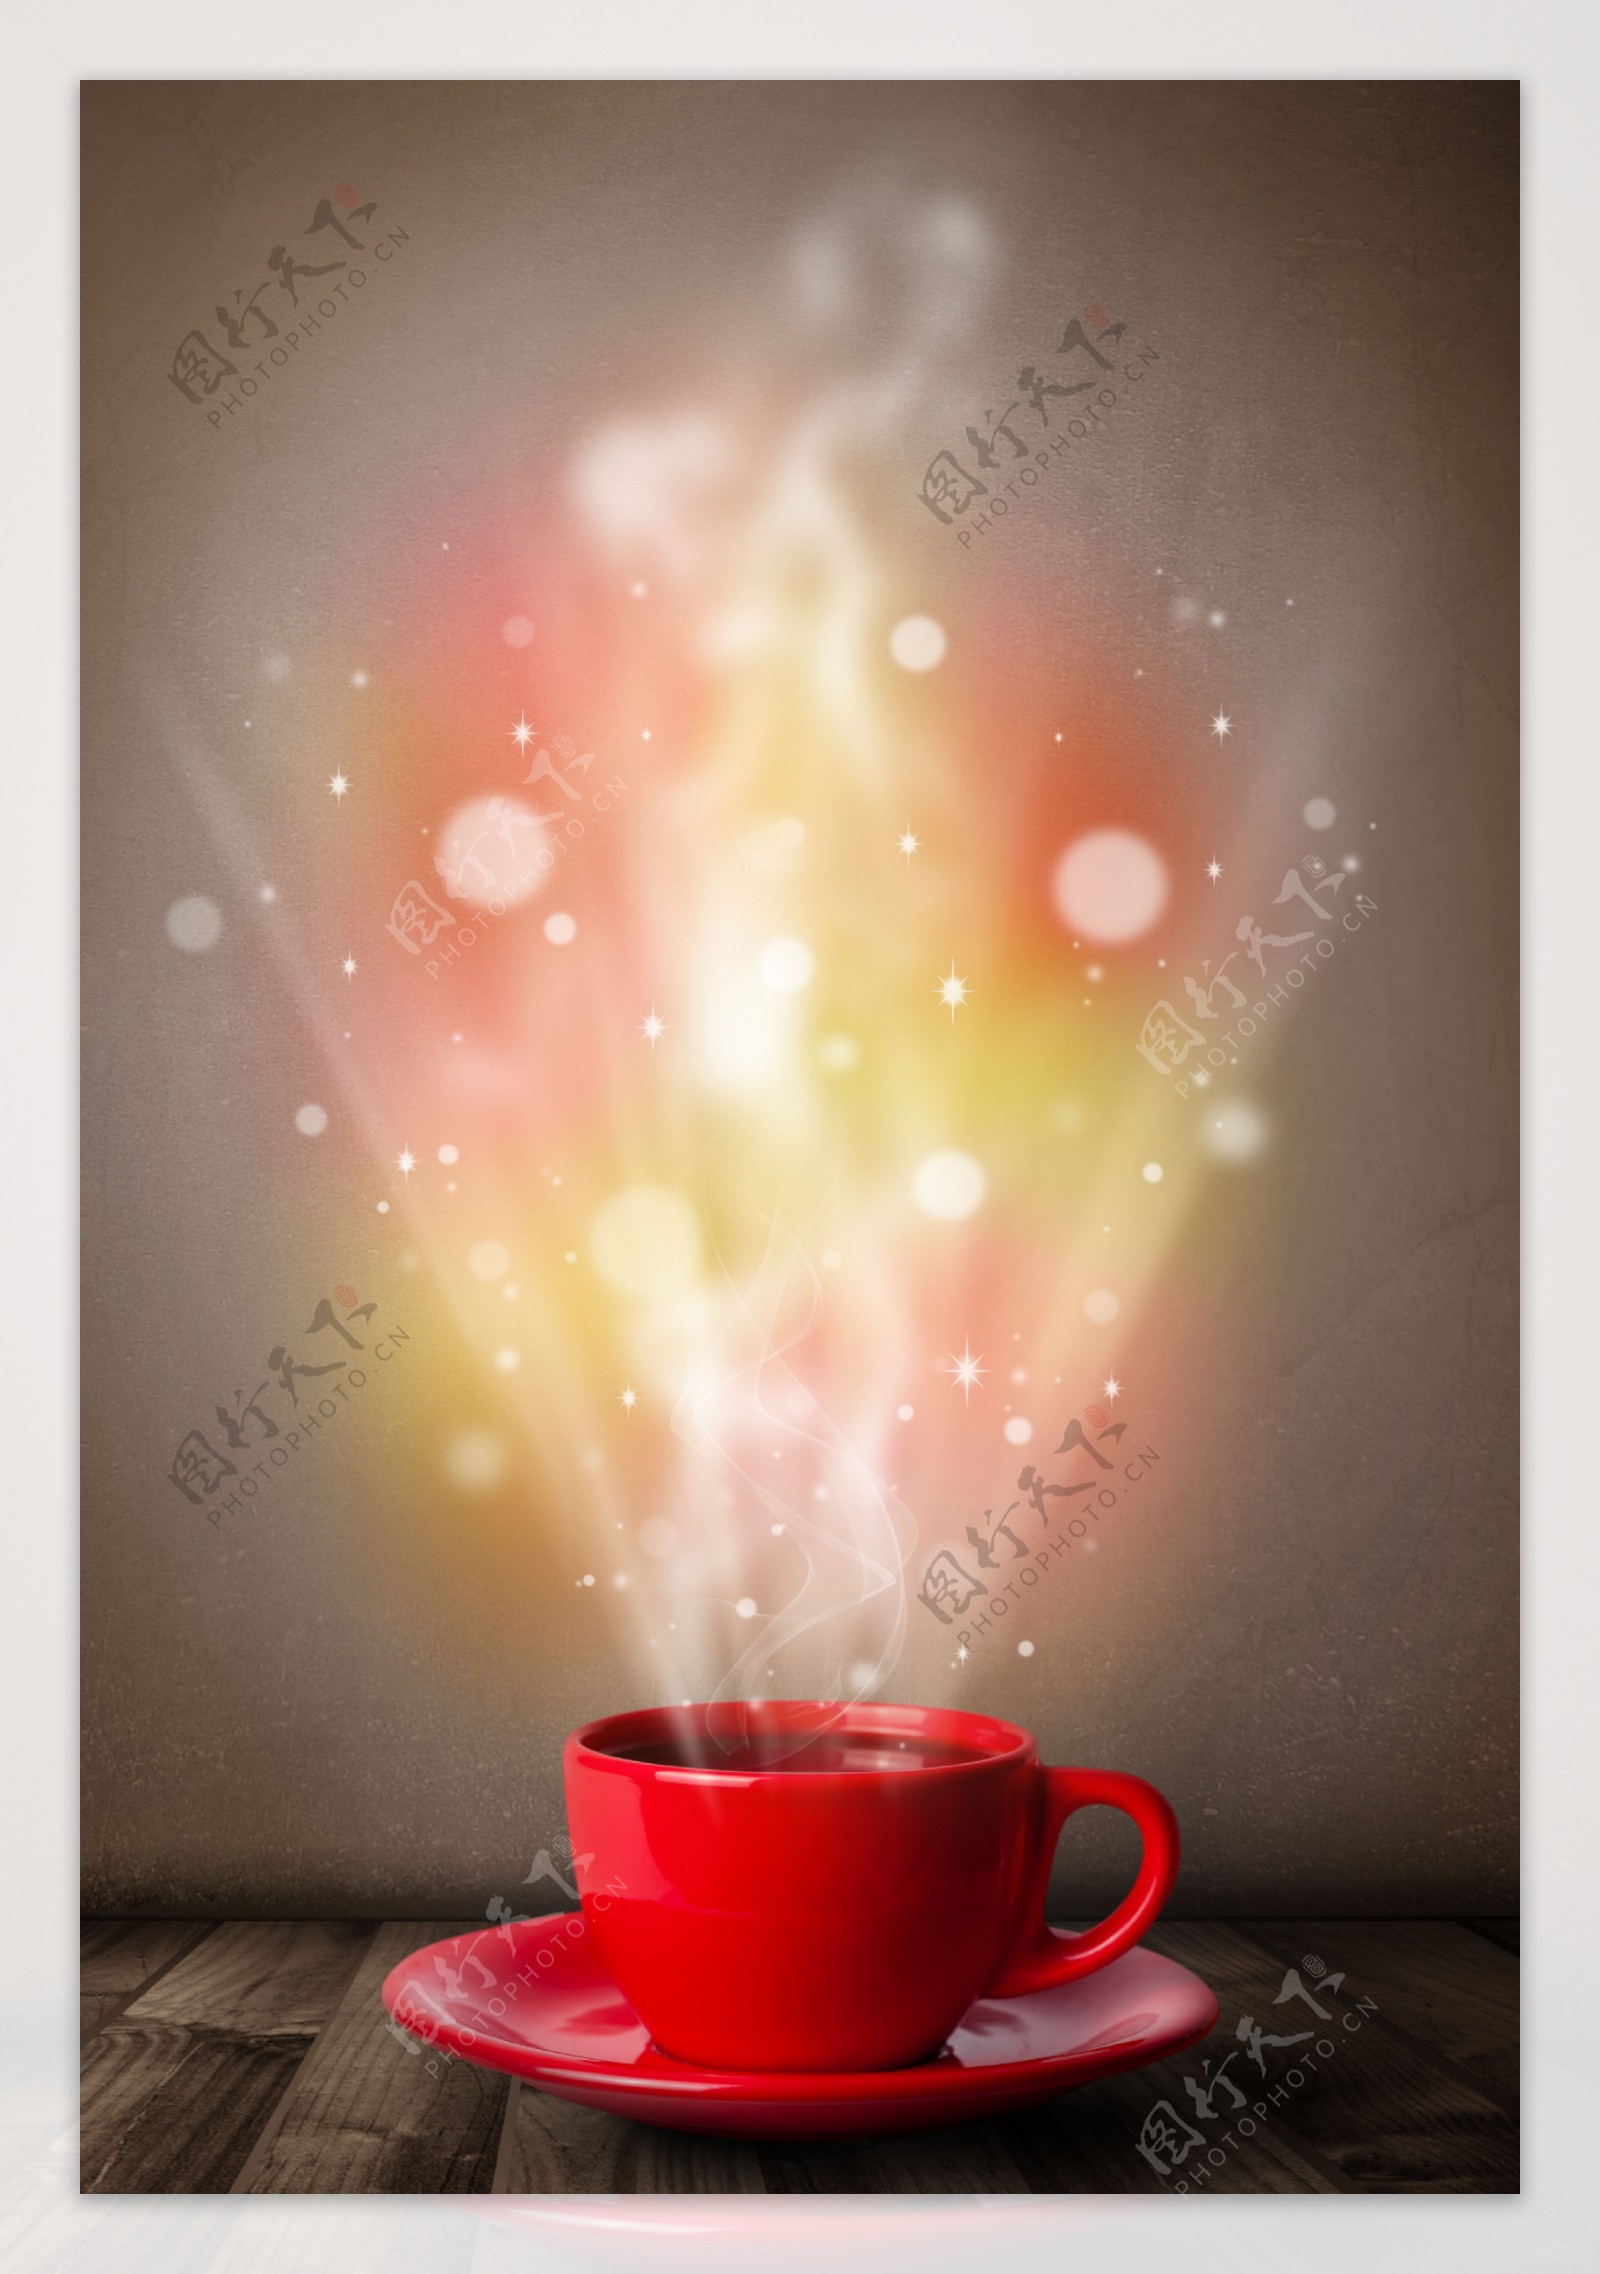 红色咖啡杯里散发出的星光图片